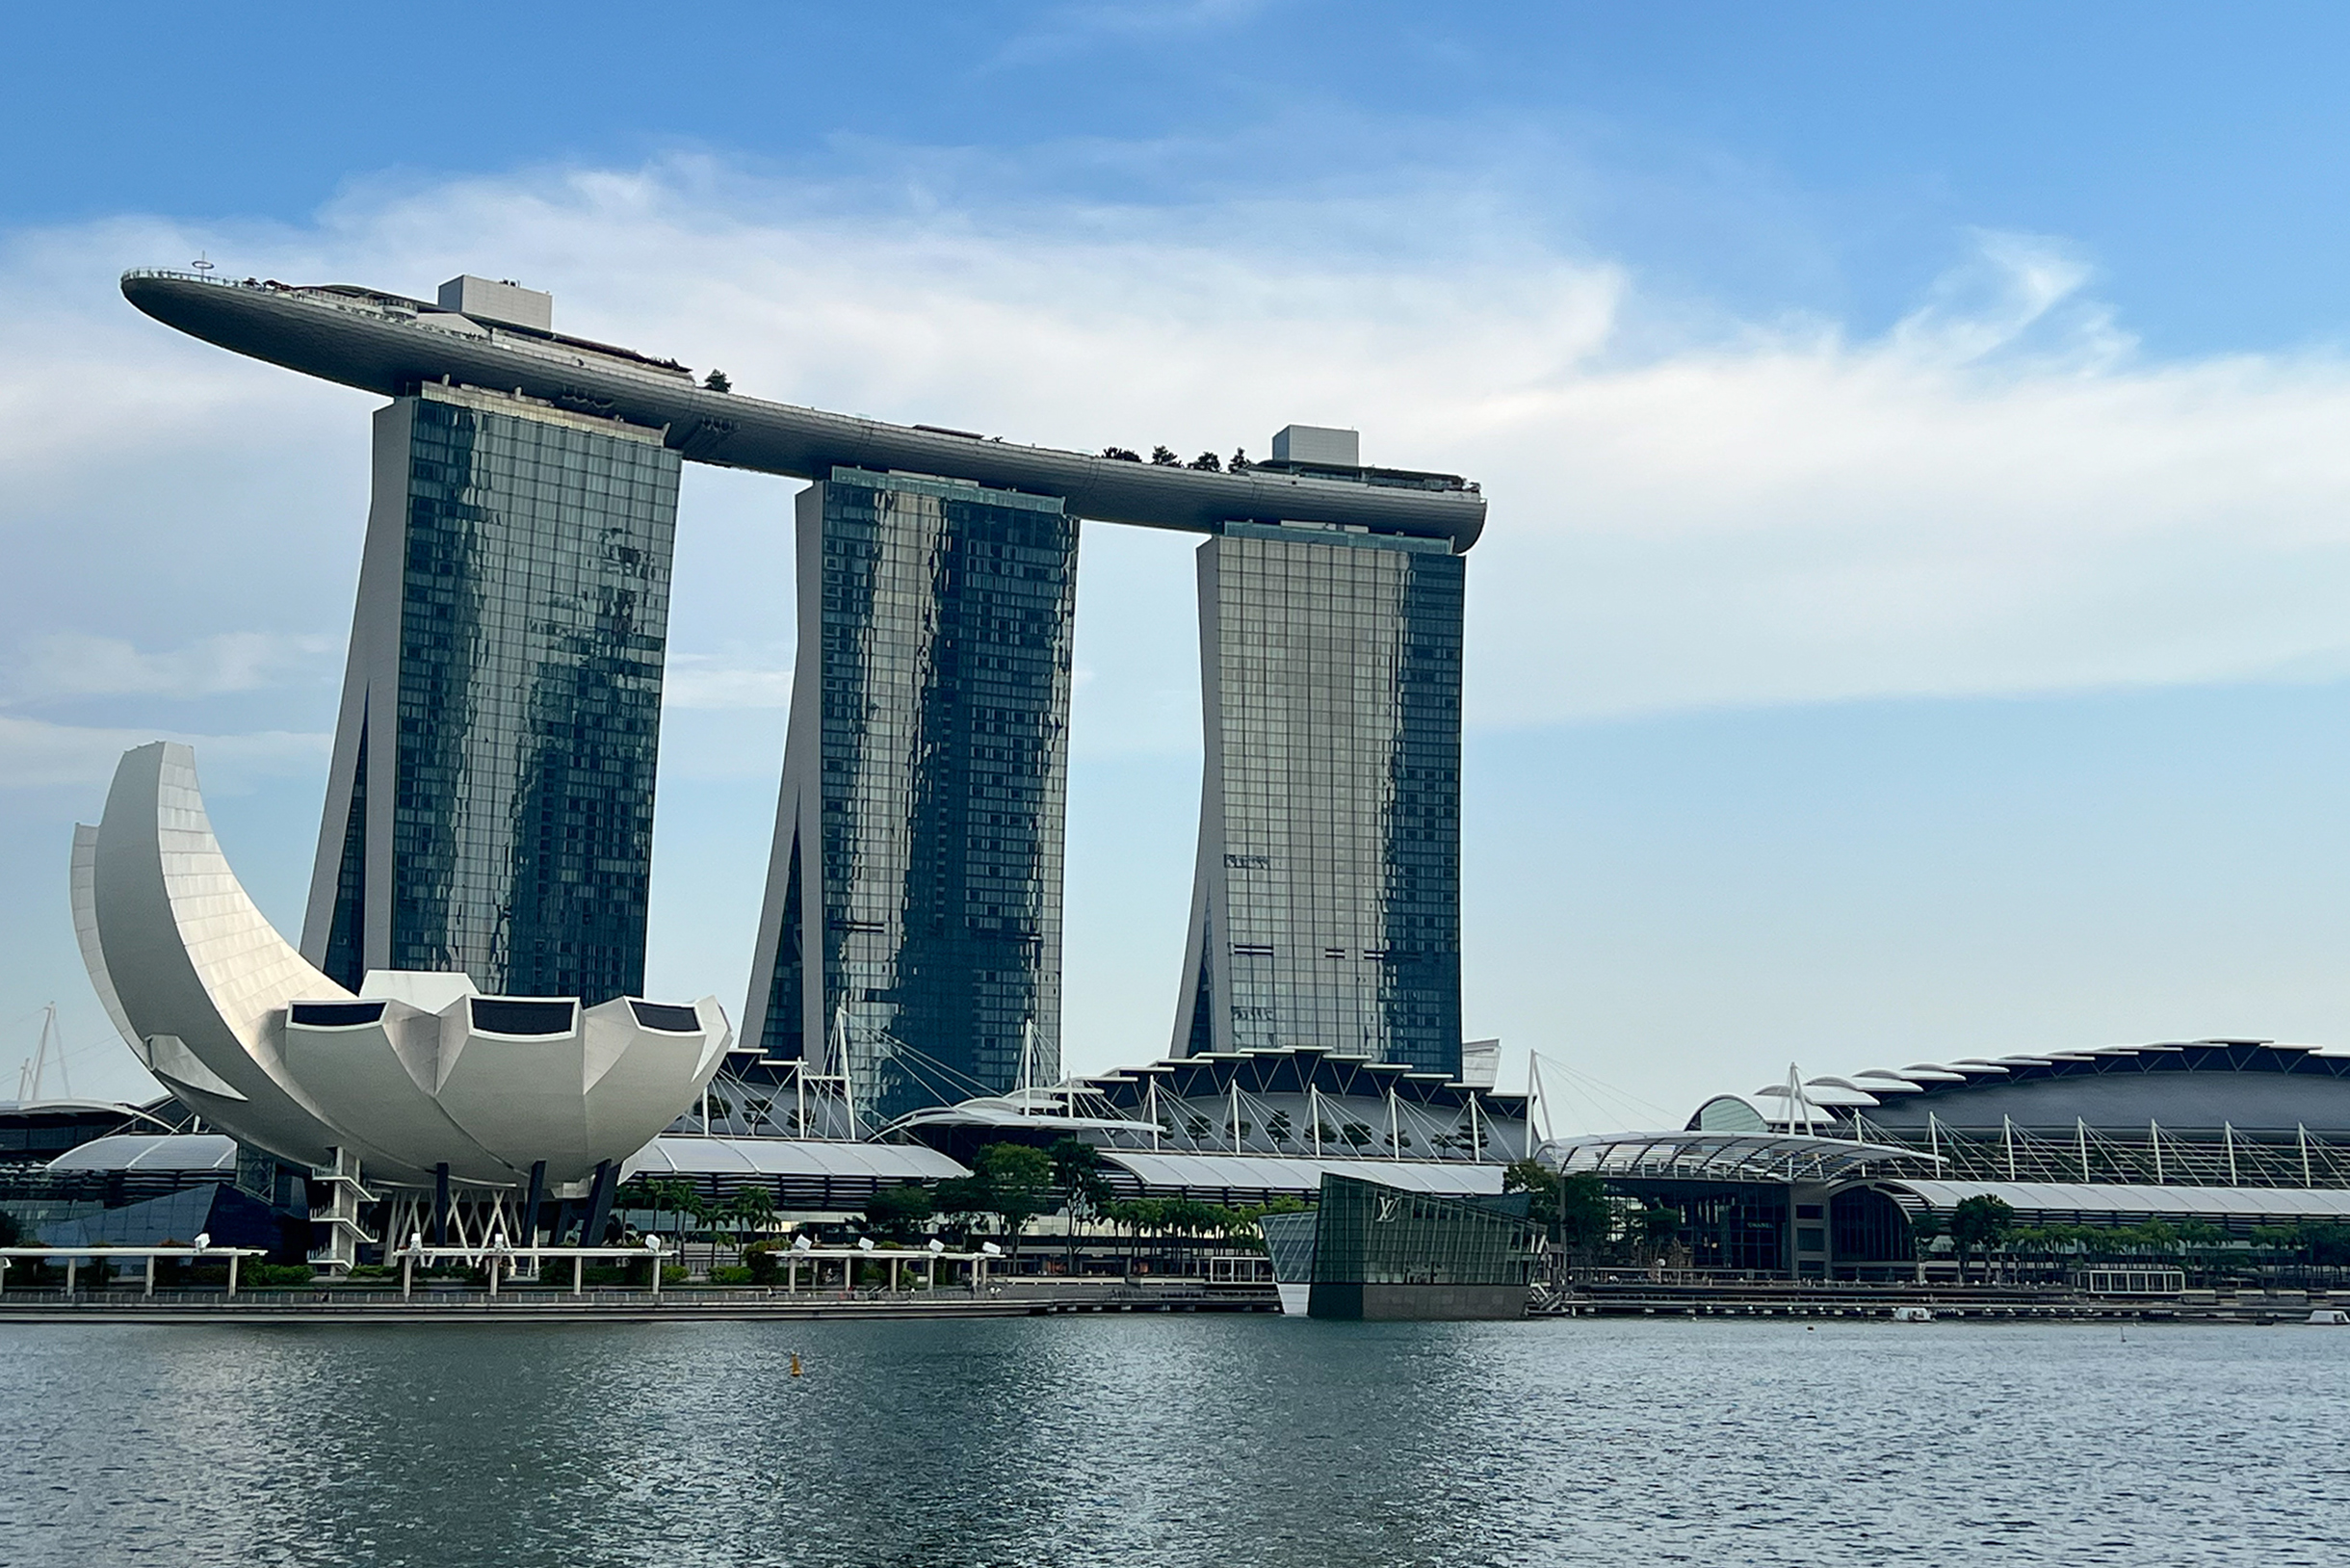 Обилие небоскребов и всевозможных чудес инженерной мысли в Сингапуре, безусловно, впечатляет